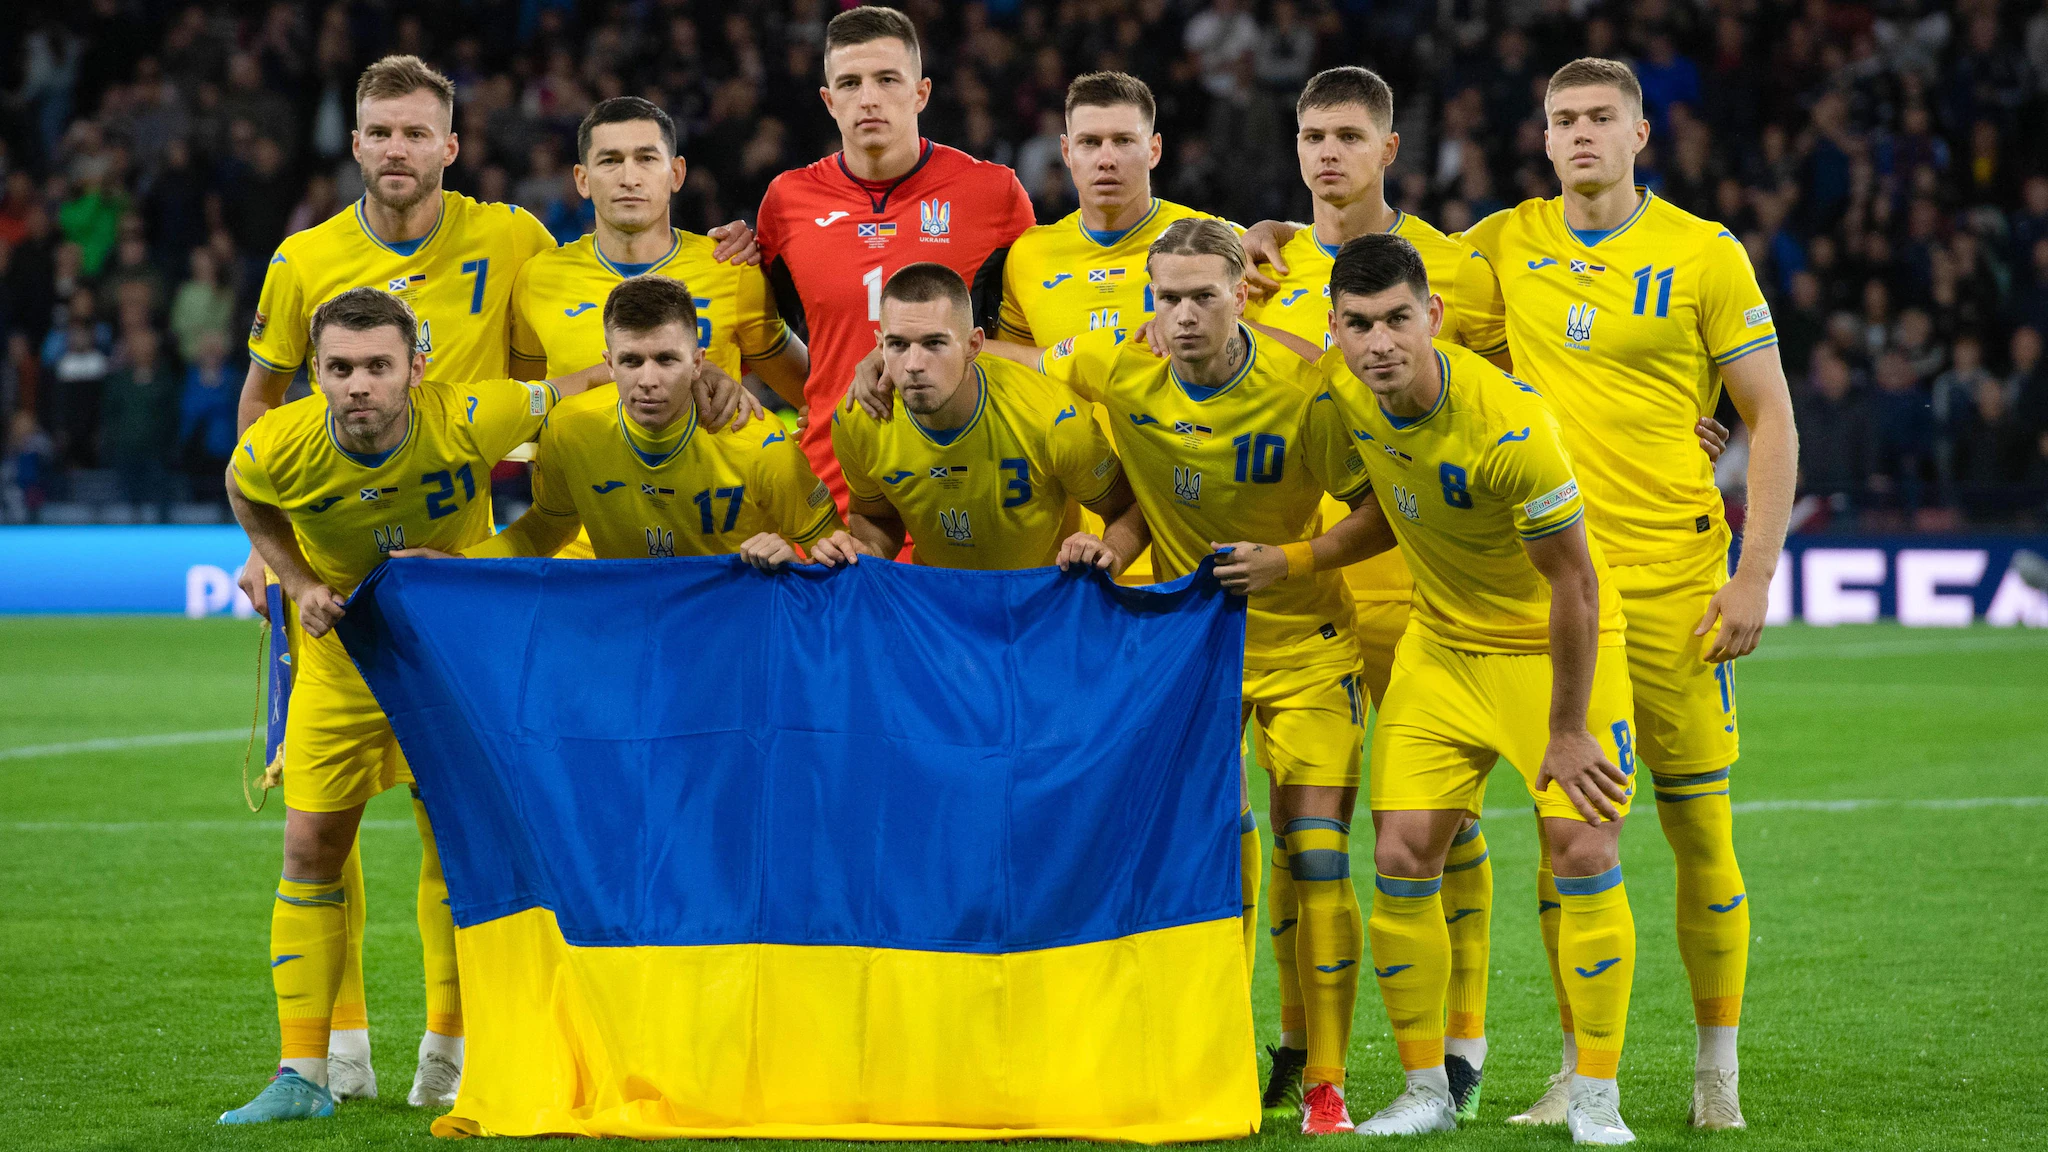 Украинцы получат особую охрану от Германии во время ЧЕ по футболу